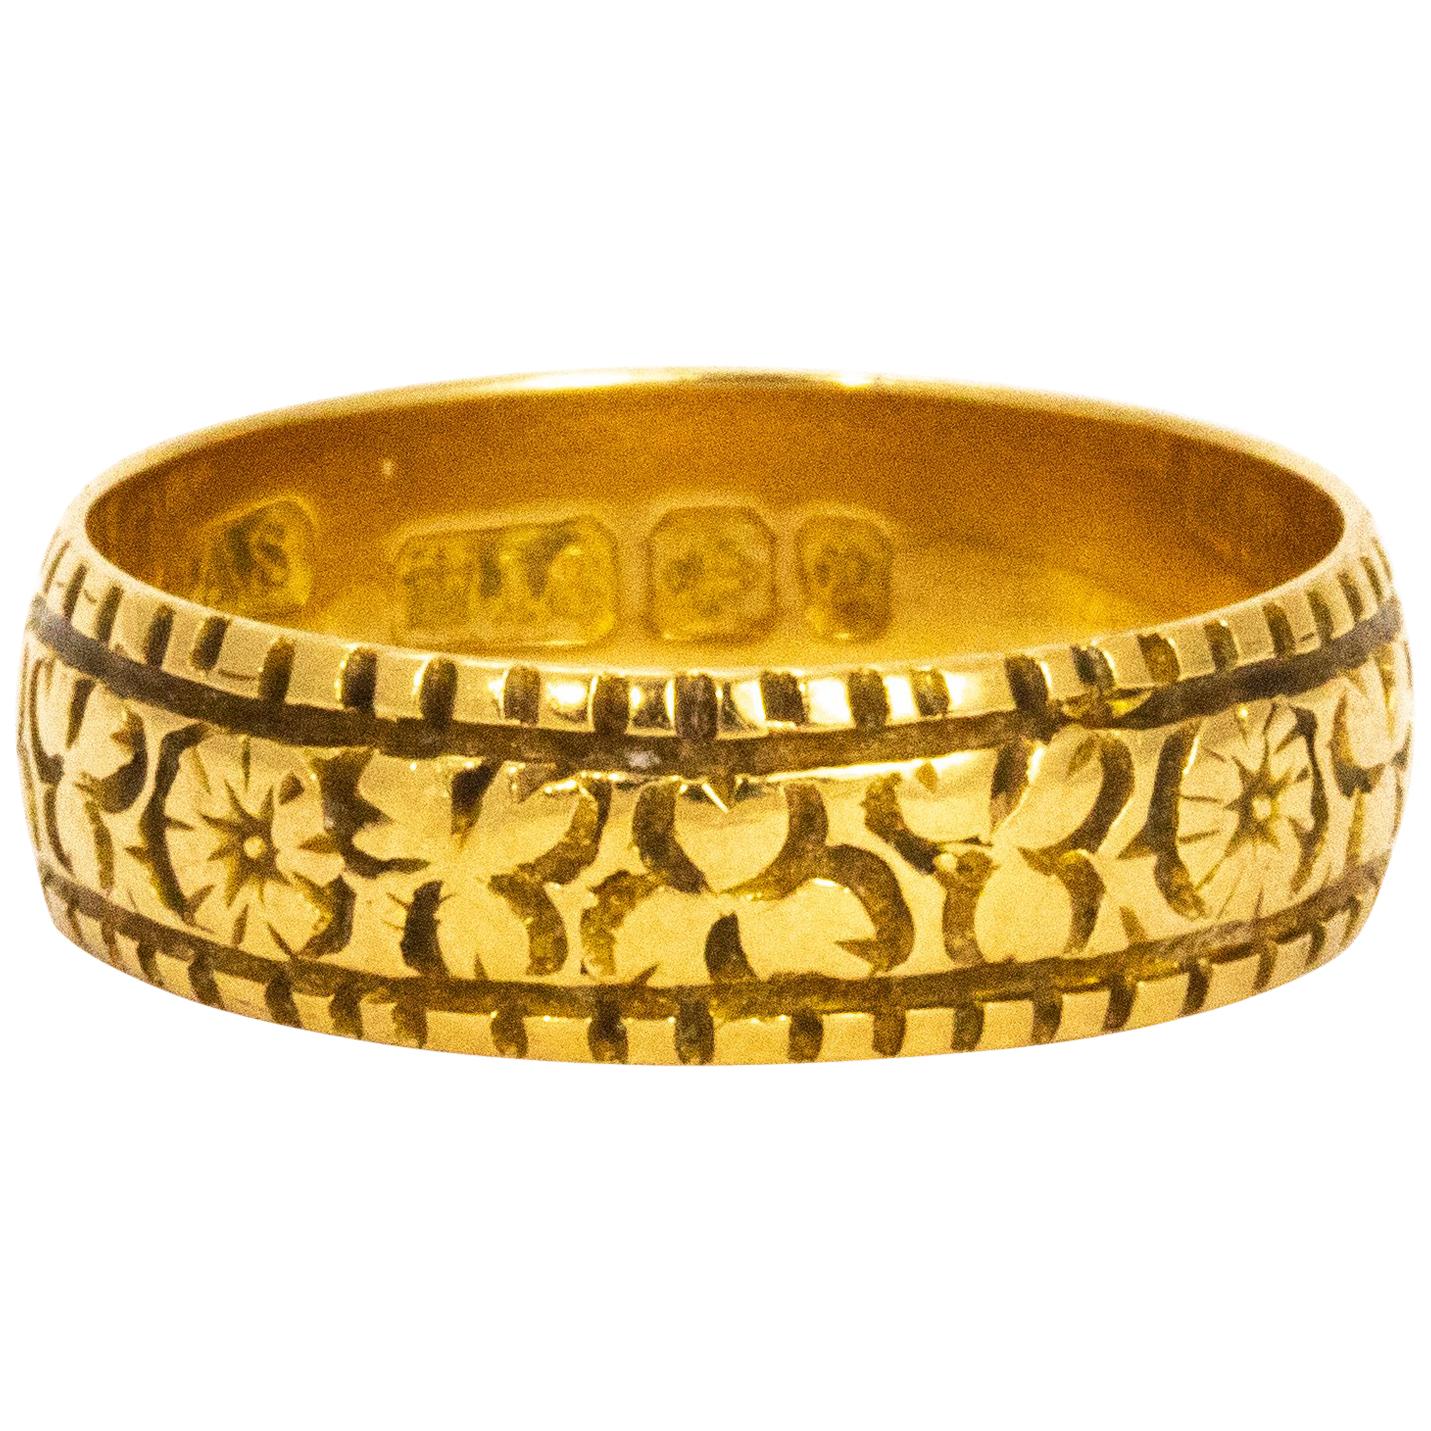 Art Nouveau Decorative 18 Carat Gold Band